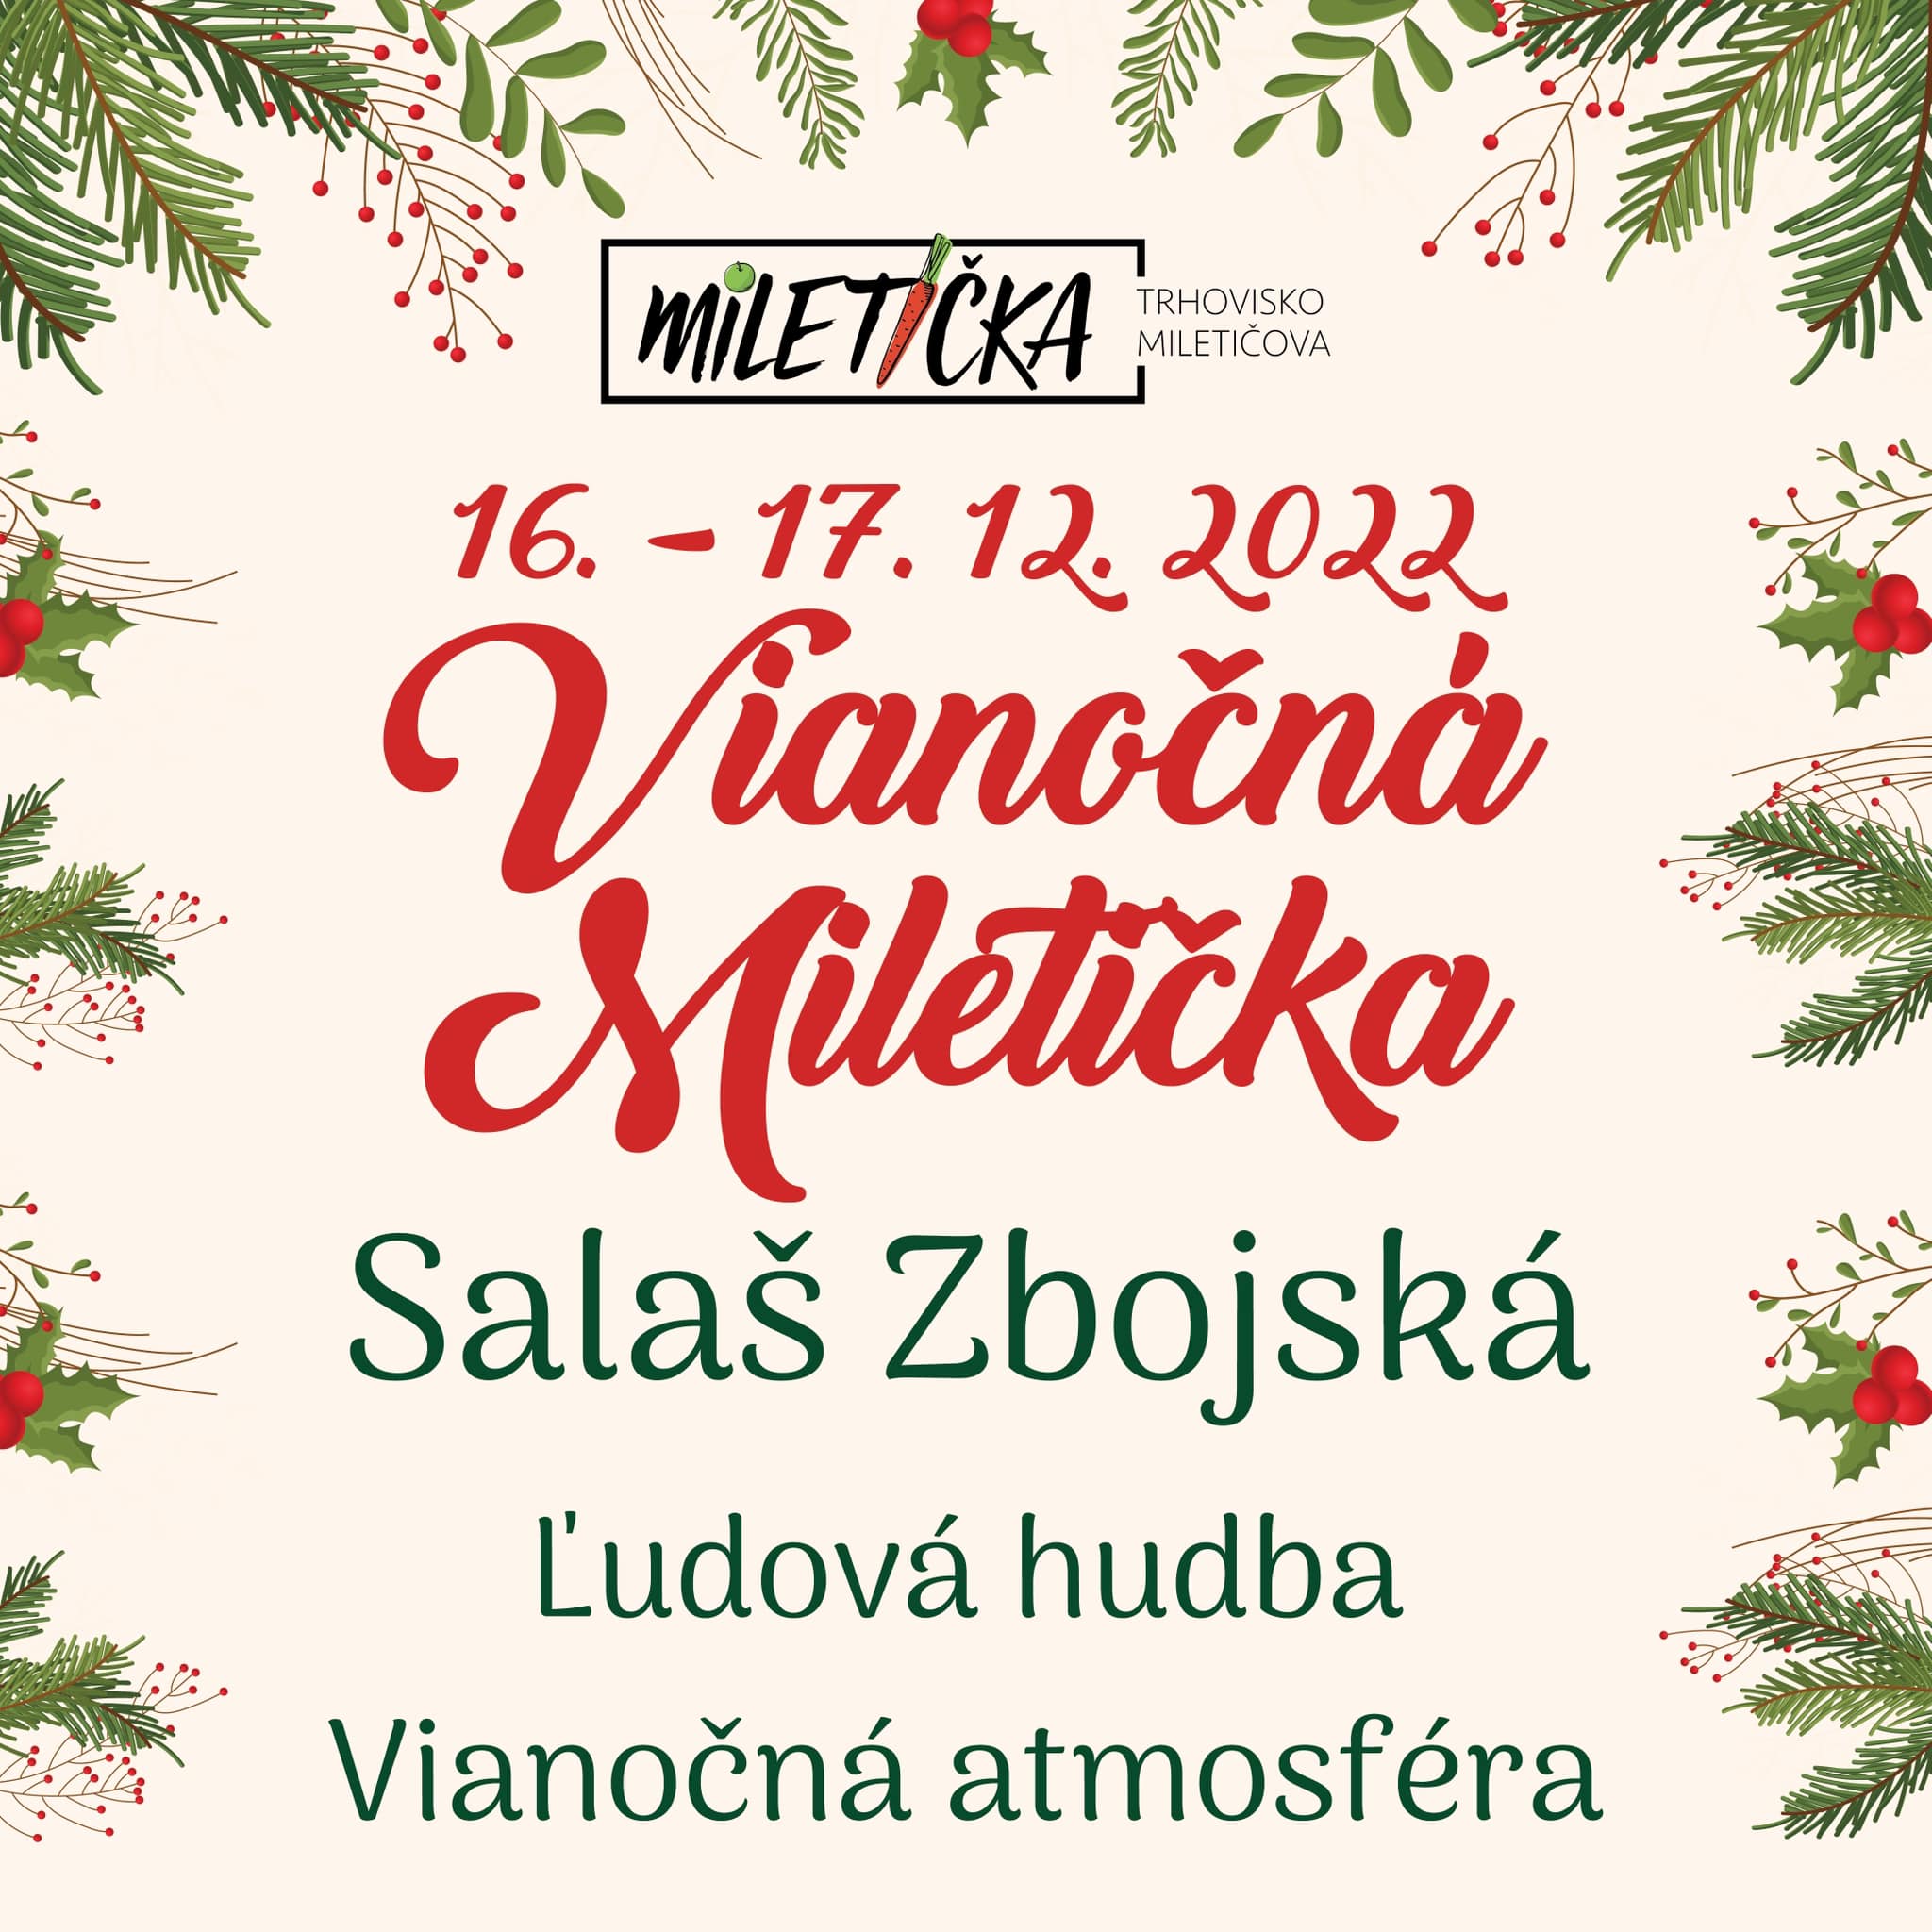 Vianočná Miletička 16. - 17. 12. 2022